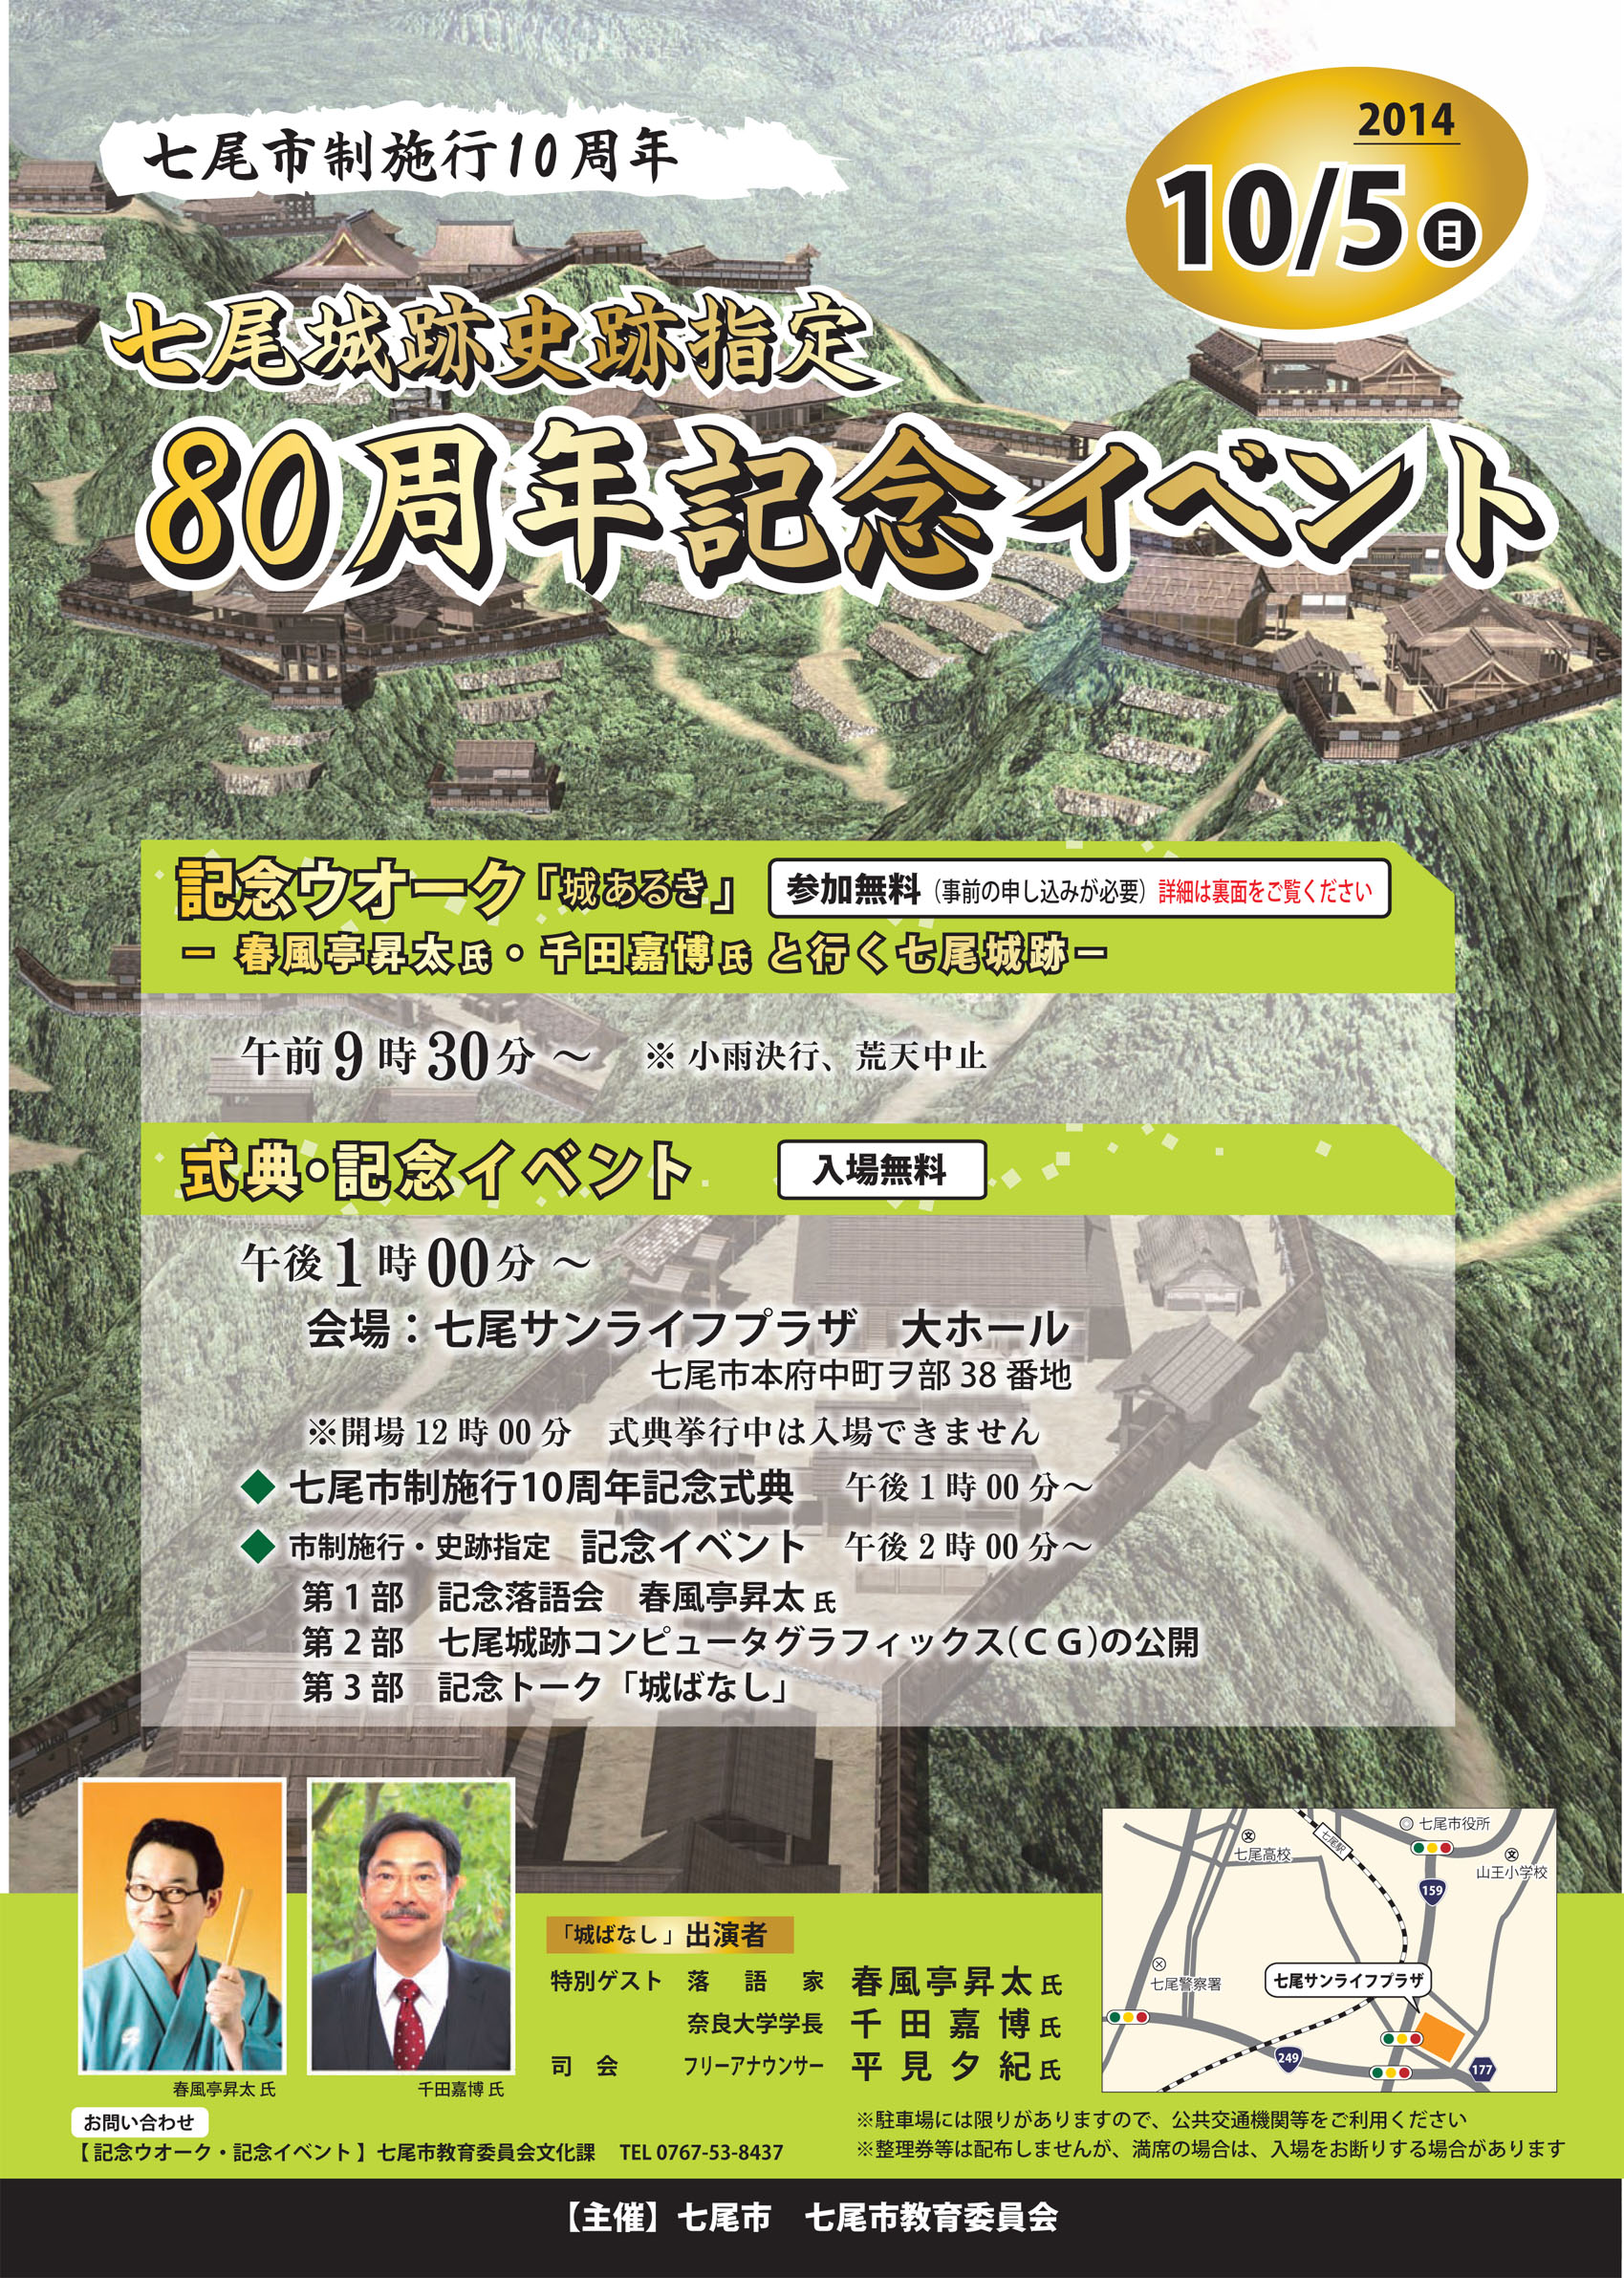 石川考古学研究会のブログ